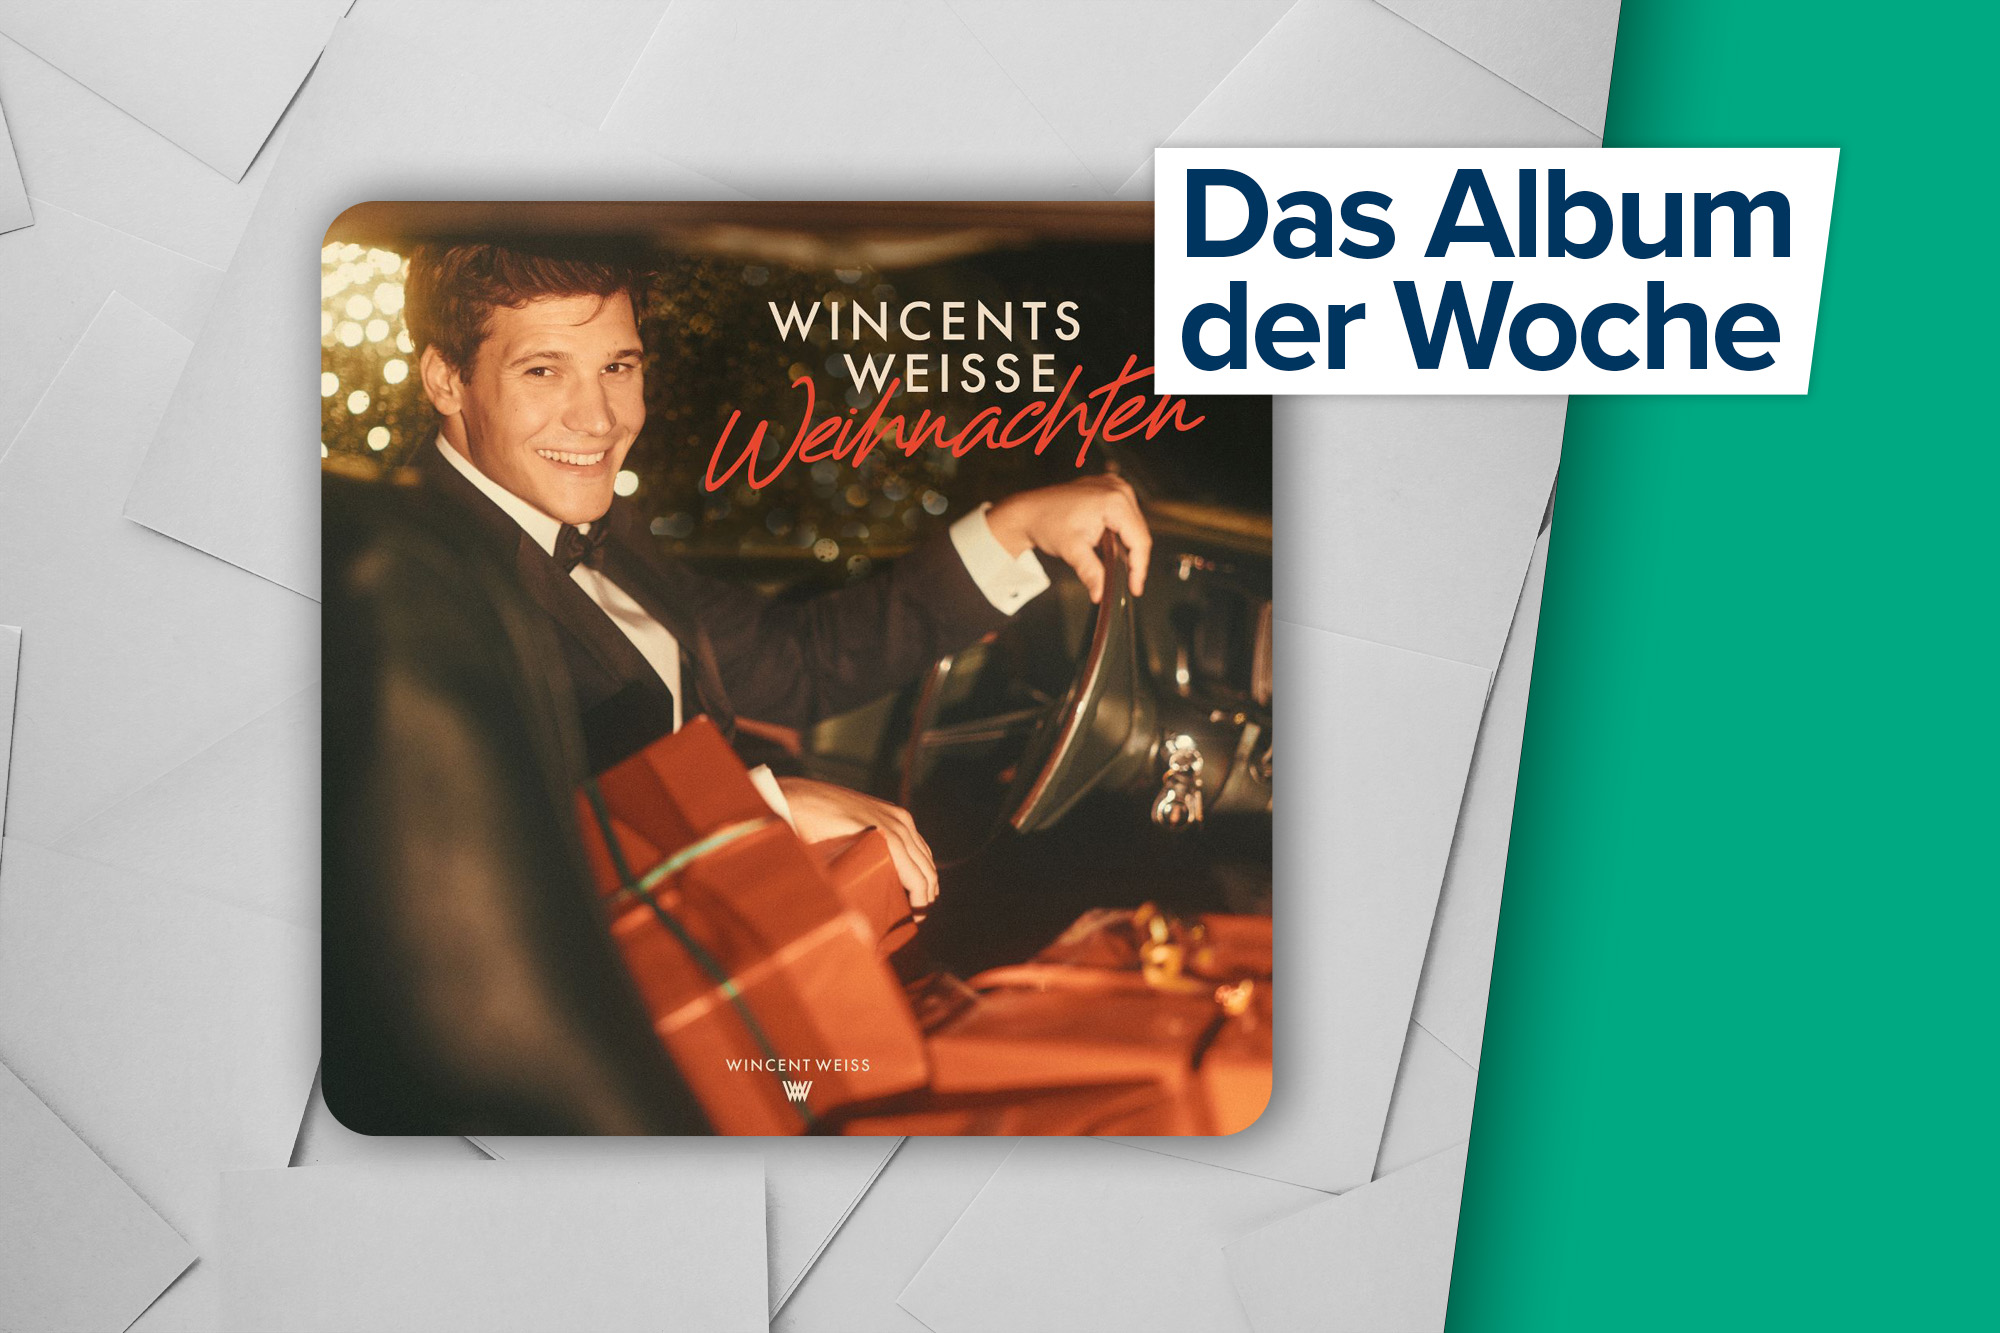 "Wincents Weisse Weihnachten" von Wincent Weiss (Label: UMD/ Vertigo Berlin)